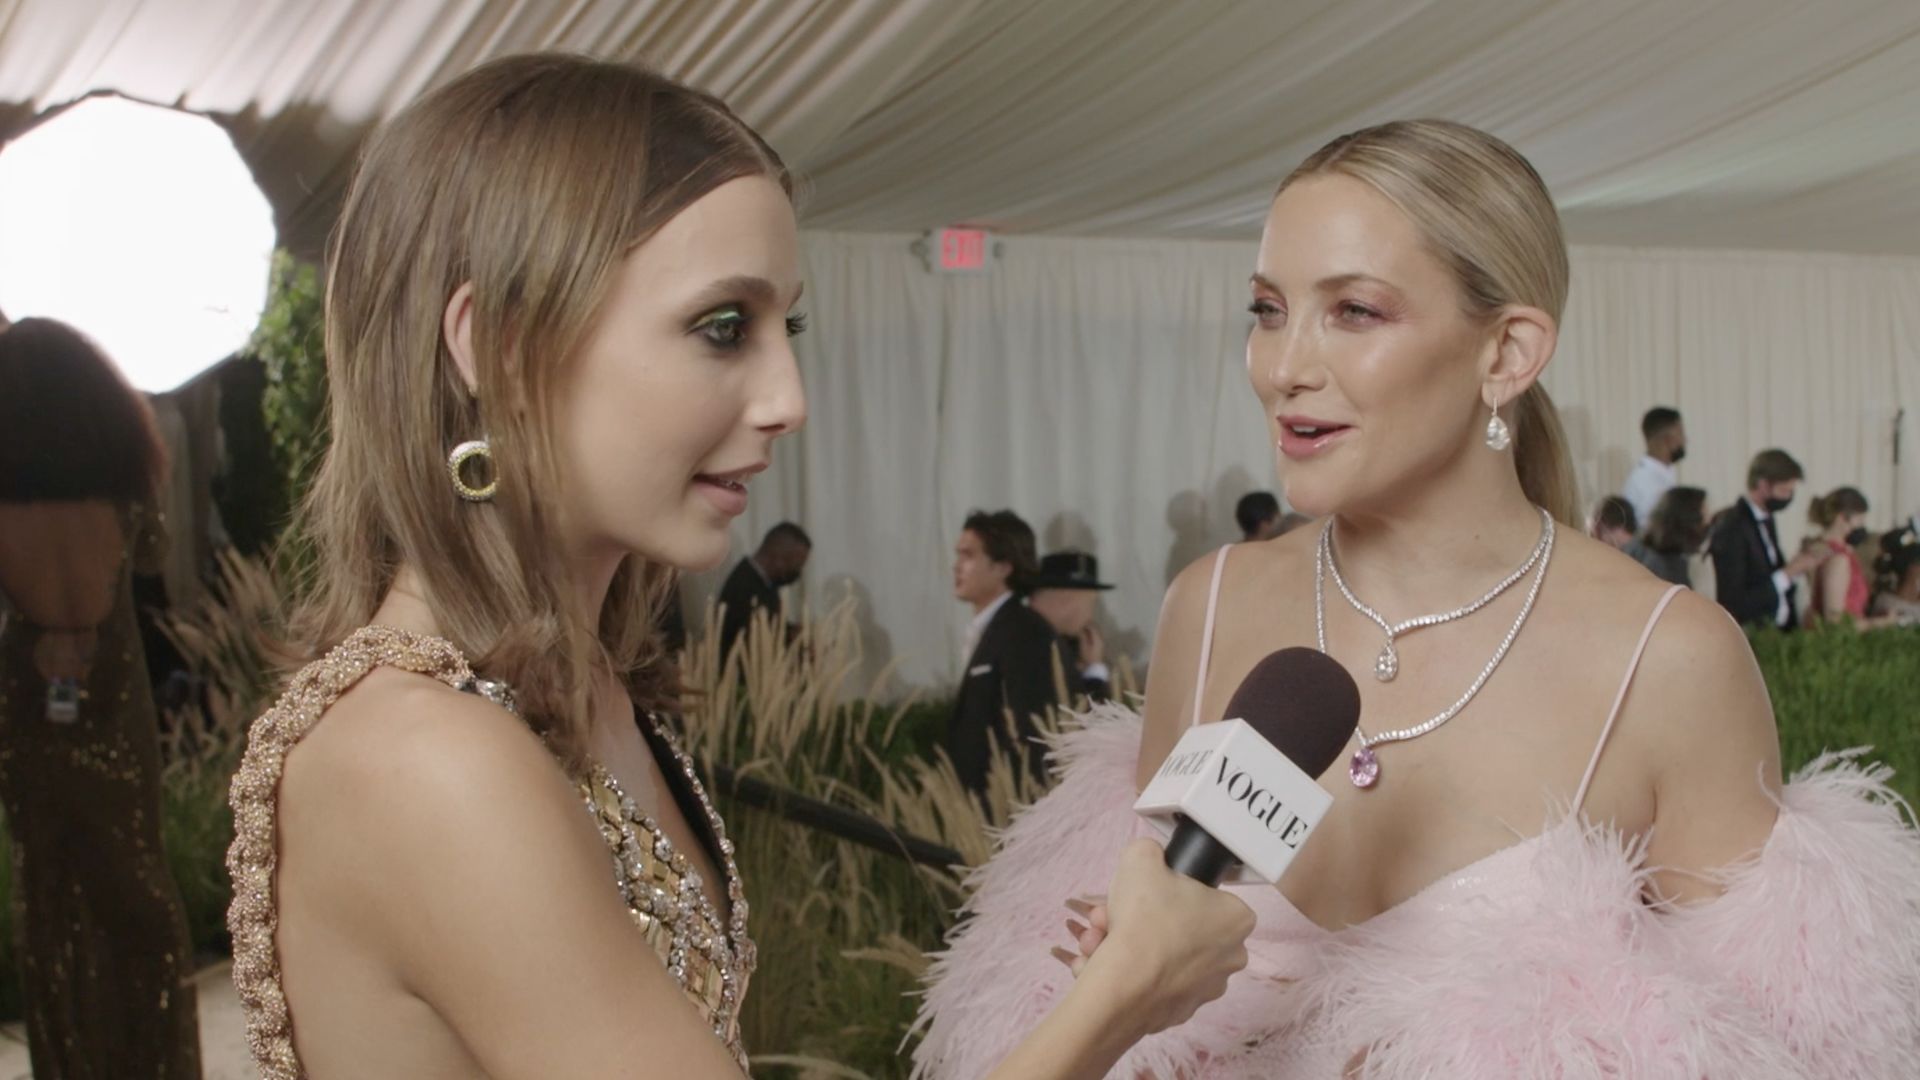 Watch Kate Hudson's Perfectly Pink Met Gala Entrance, Met Gala